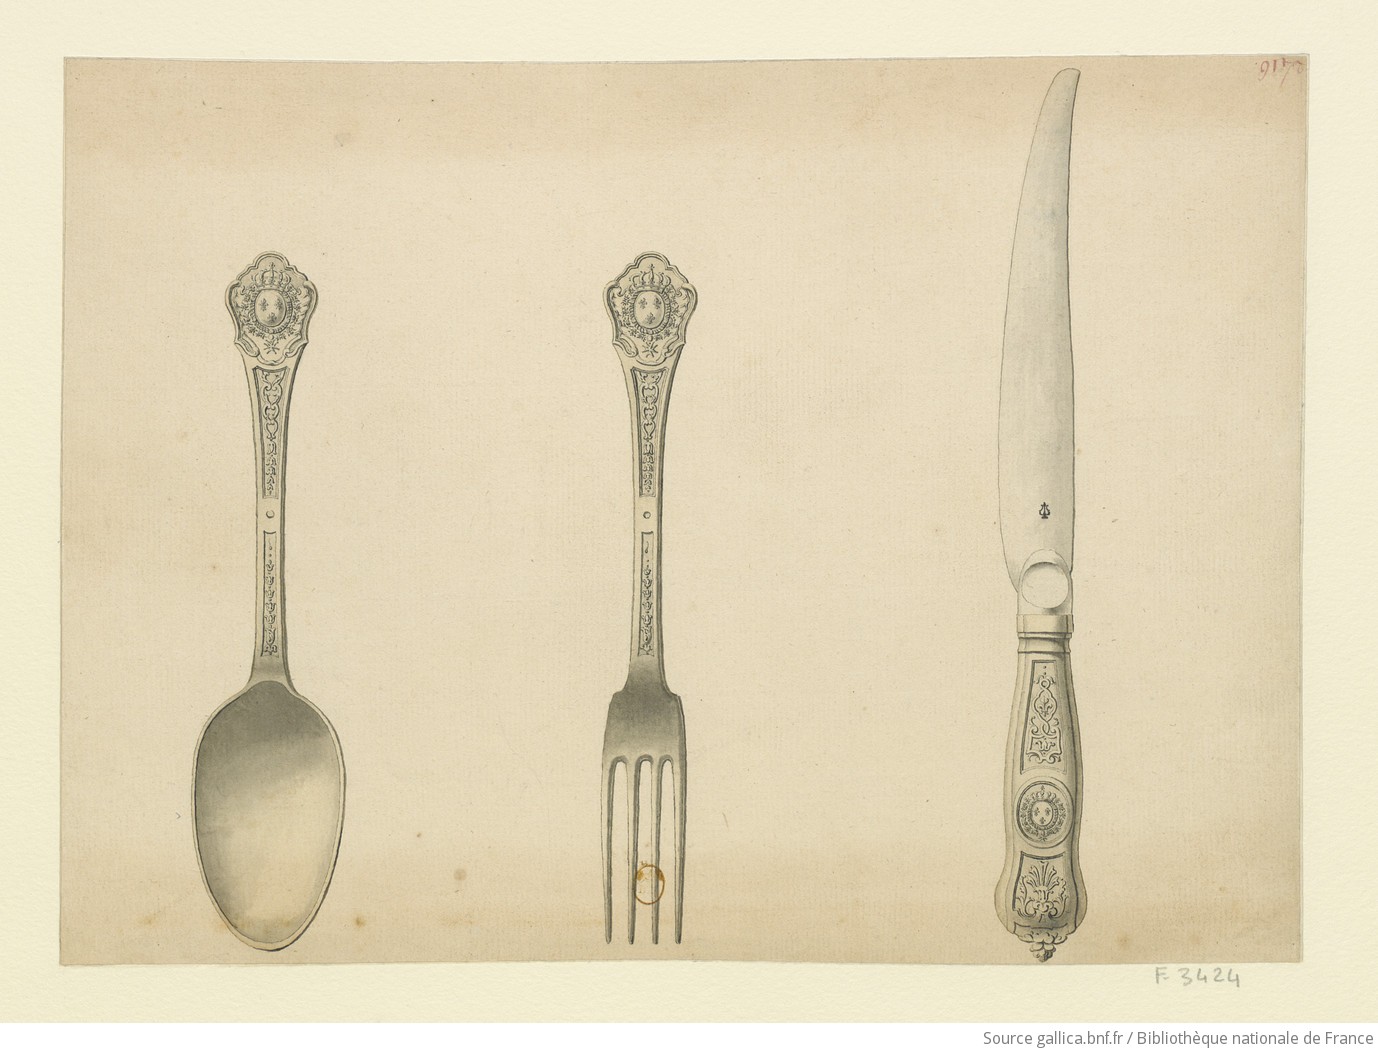 [Cuiller, fourchette et couteau du Roi] : [dessin] / [Nicolas Delaunay] - 1